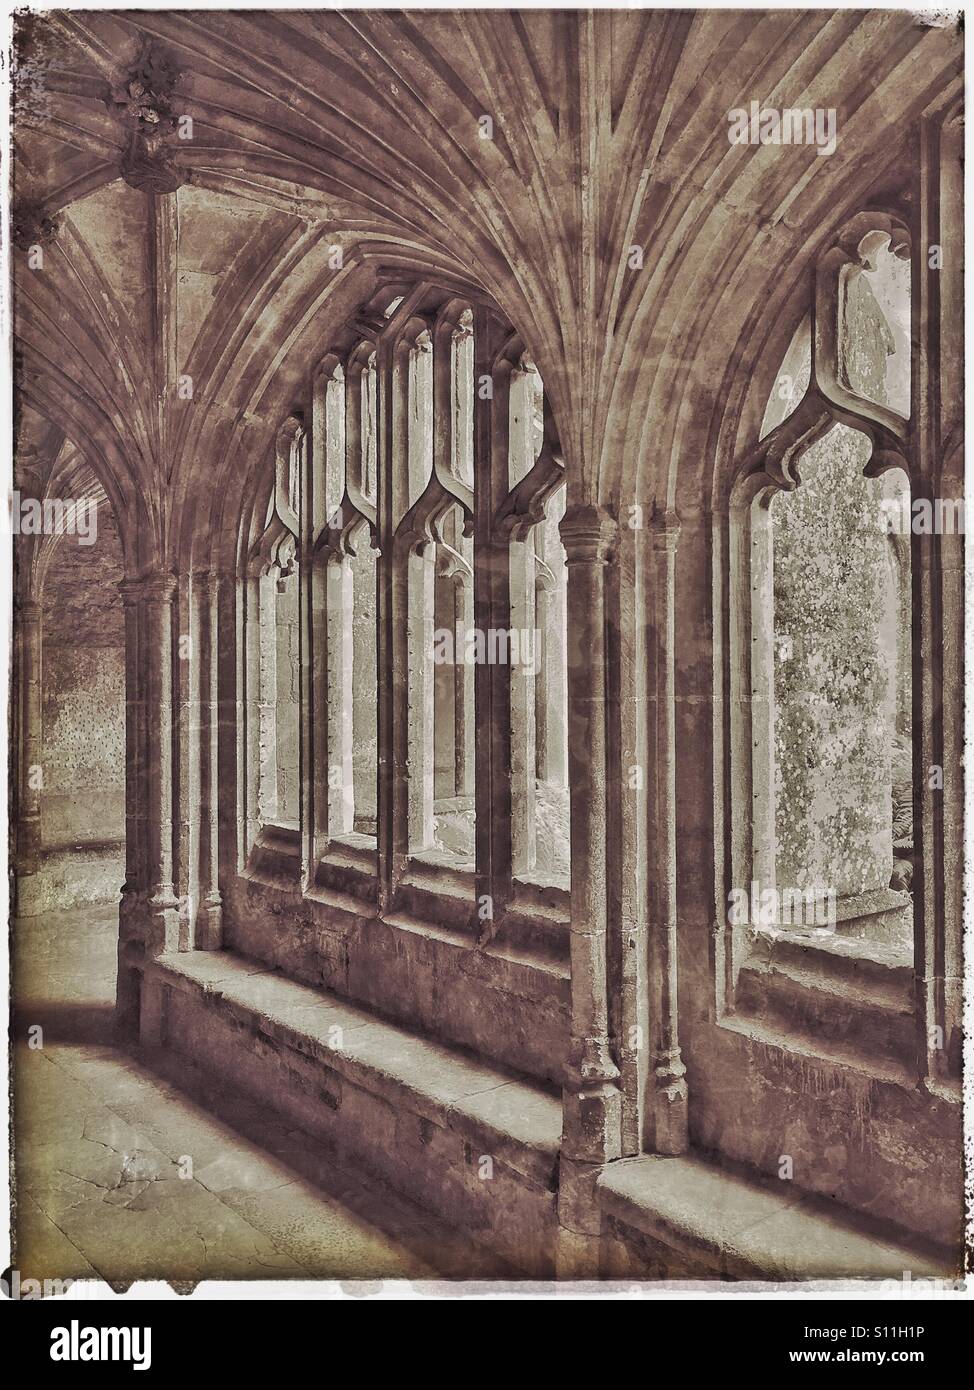 Un effetto di antiquariato fotografia di chiostri area di Lacock Abbey nel Wiltshire, Inghilterra, Regno Unito. Lacock Abbey è a cura del National Trust. Credito foto - © COLIN HOSKINS. Foto Stock